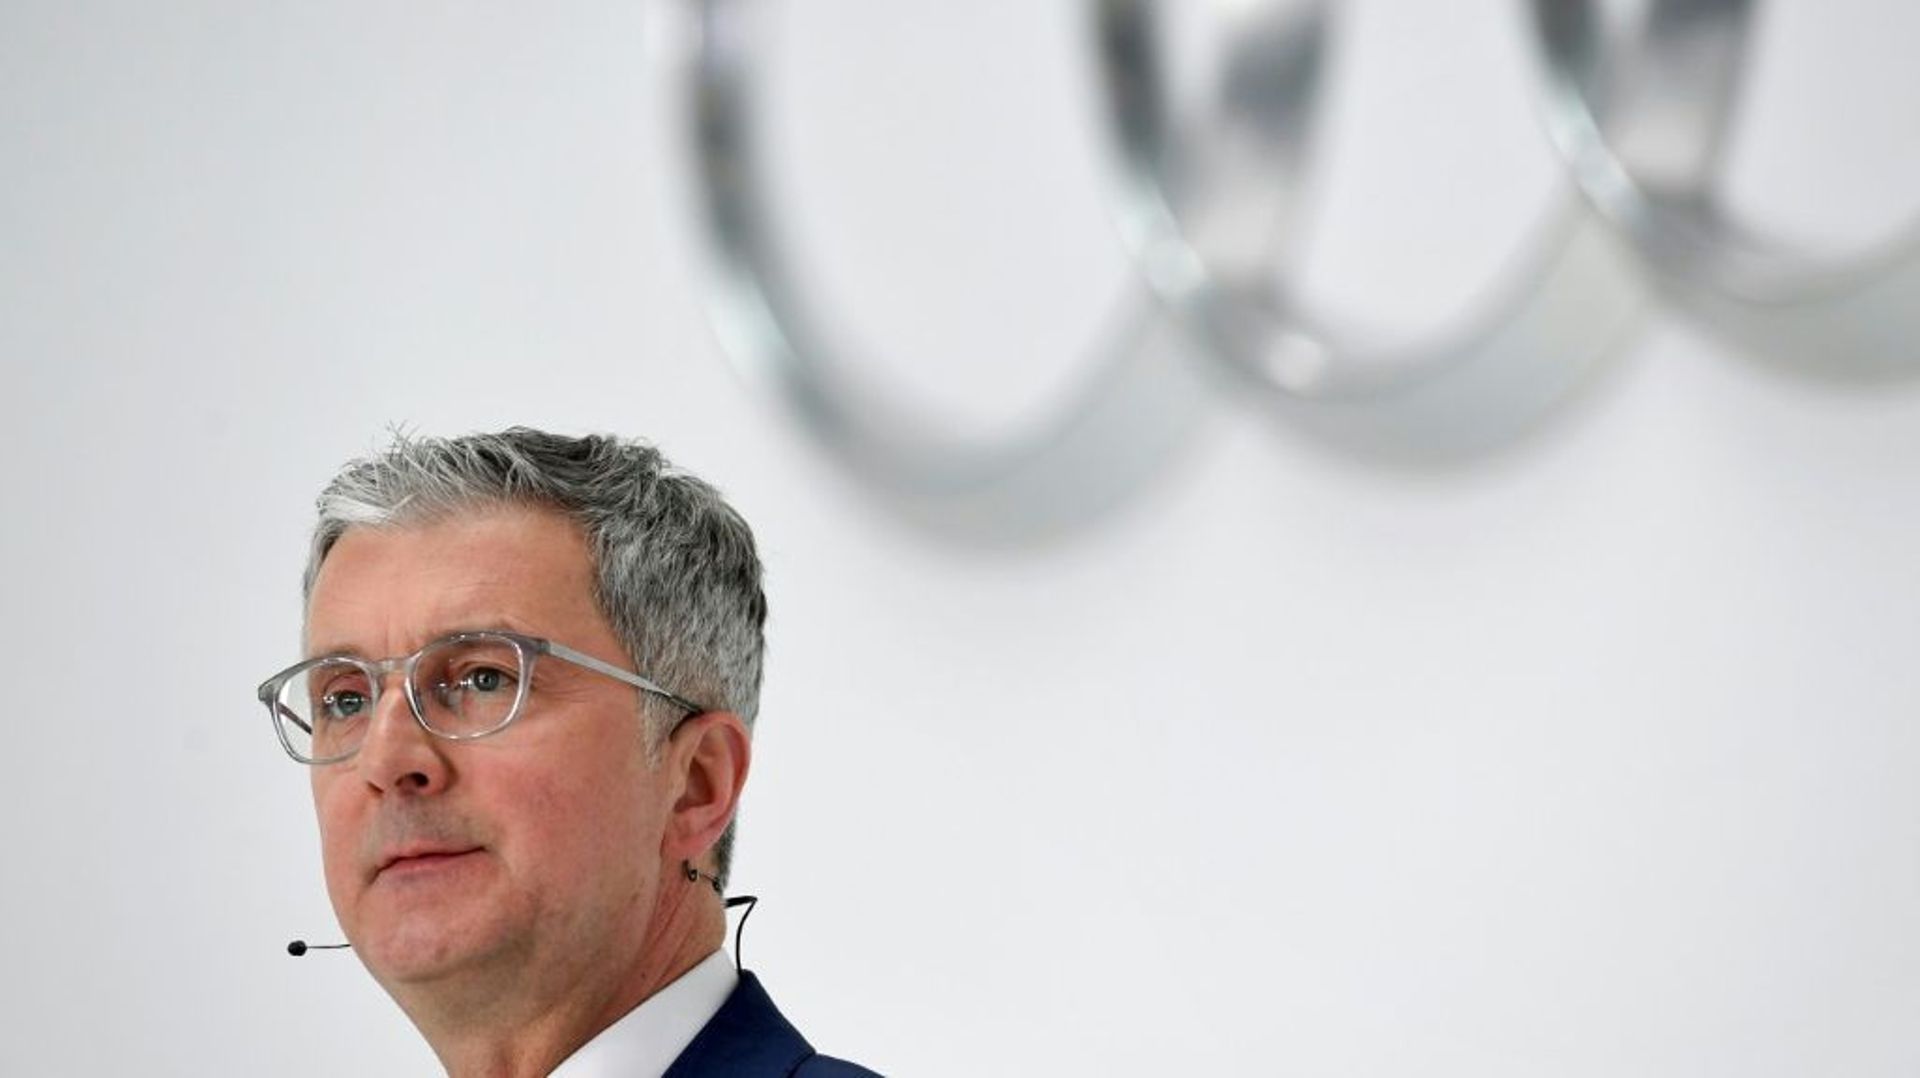 Rupert Stadler, alors président du constructeur Audi, en mars 2018 à Ingolstadt, en Allemagne